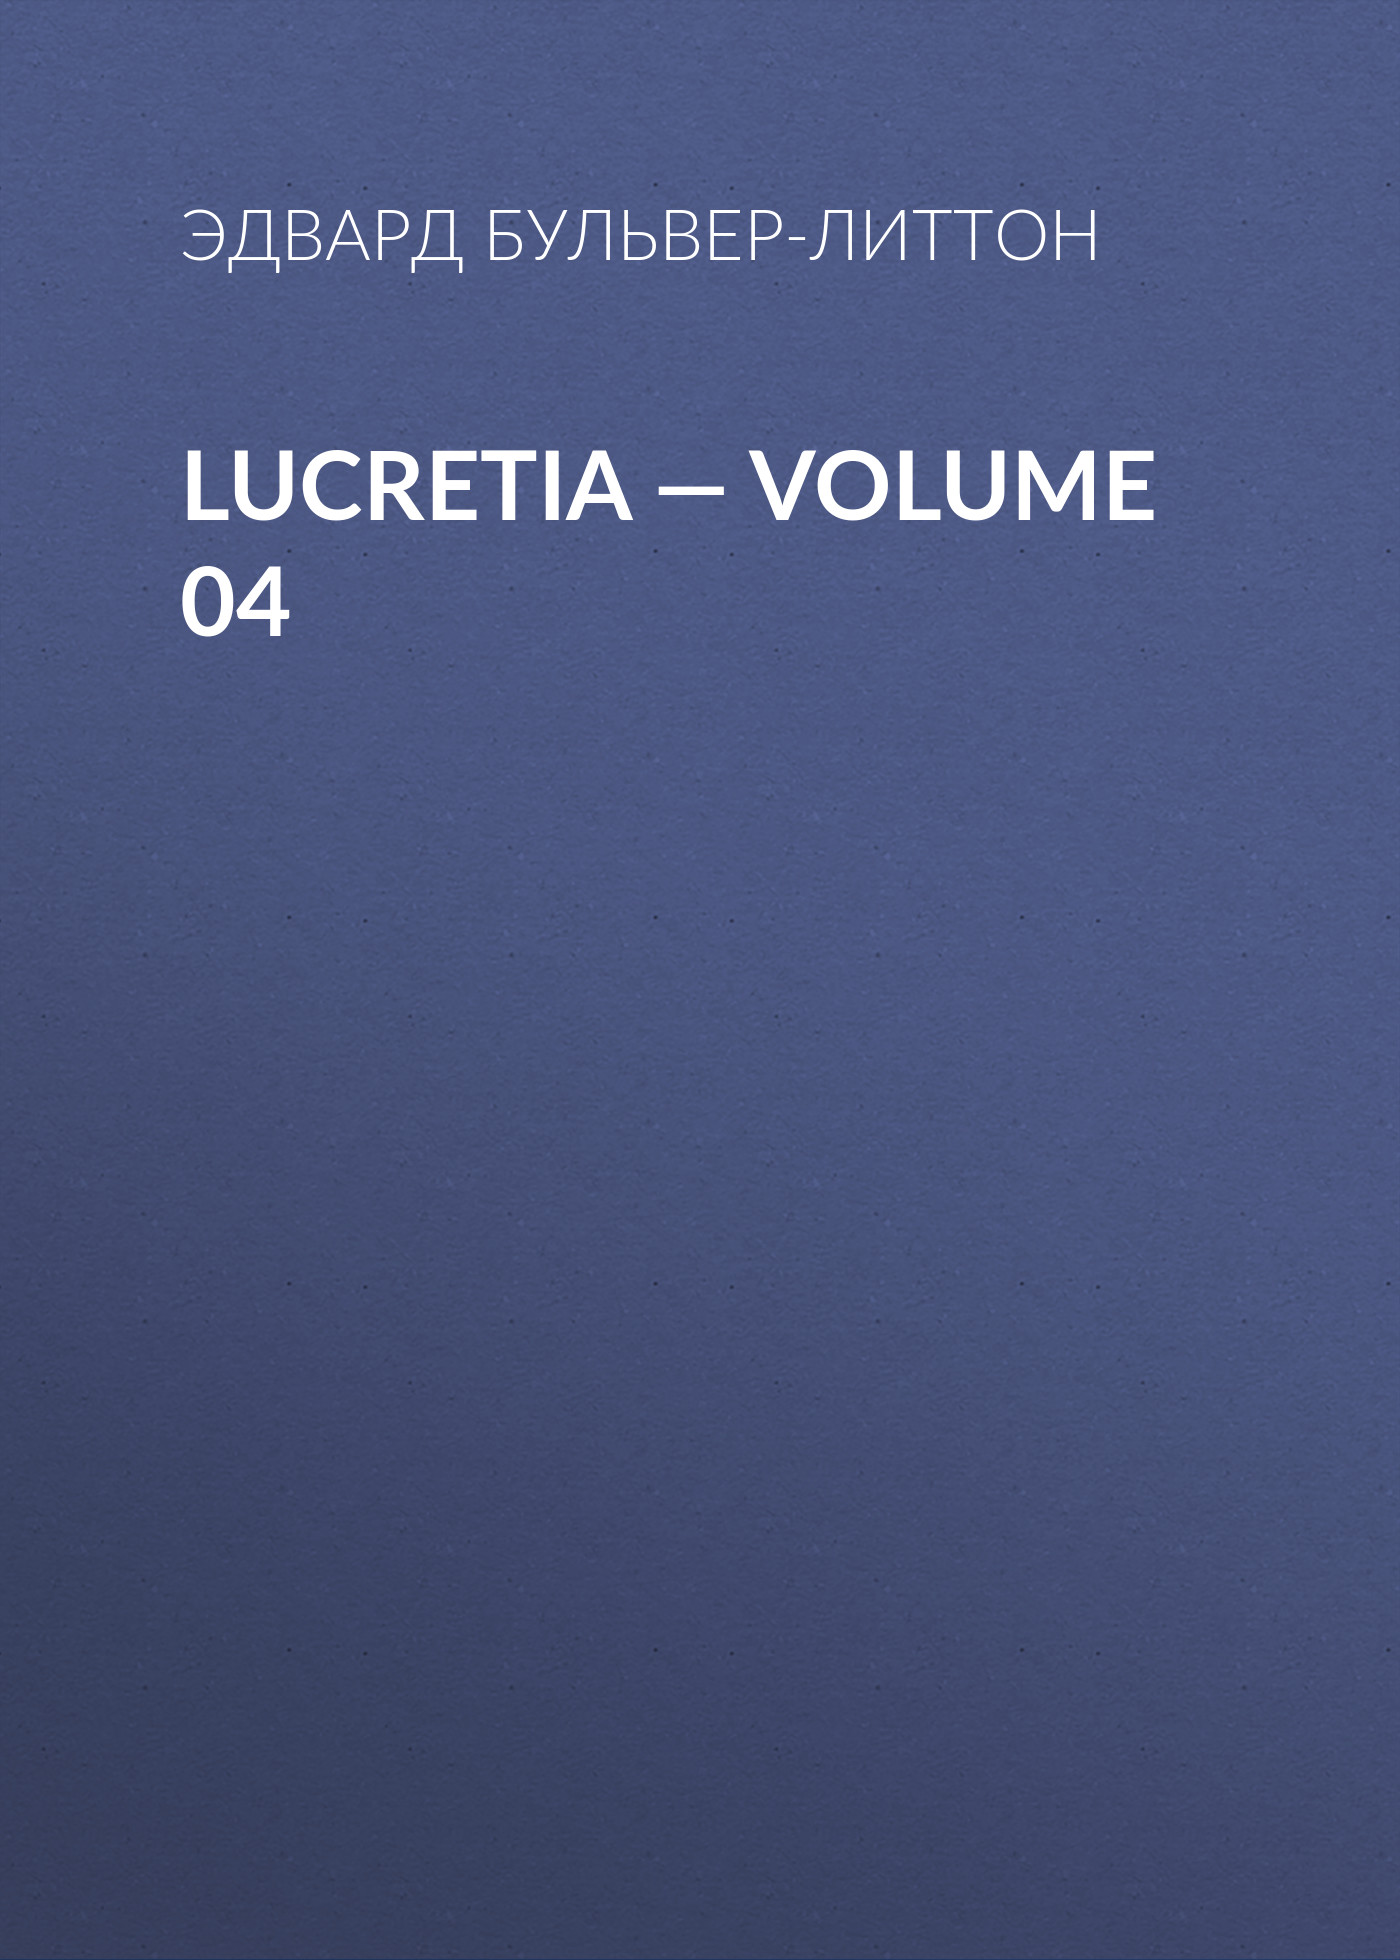 Книга Lucretia – Volume 04 из серии , созданная Эдвард Бульвер-Литтон, может относится к жанру Литература 19 века, Зарубежные детективы. Стоимость электронной книги Lucretia – Volume 04 с идентификатором 35009049 составляет 0 руб.